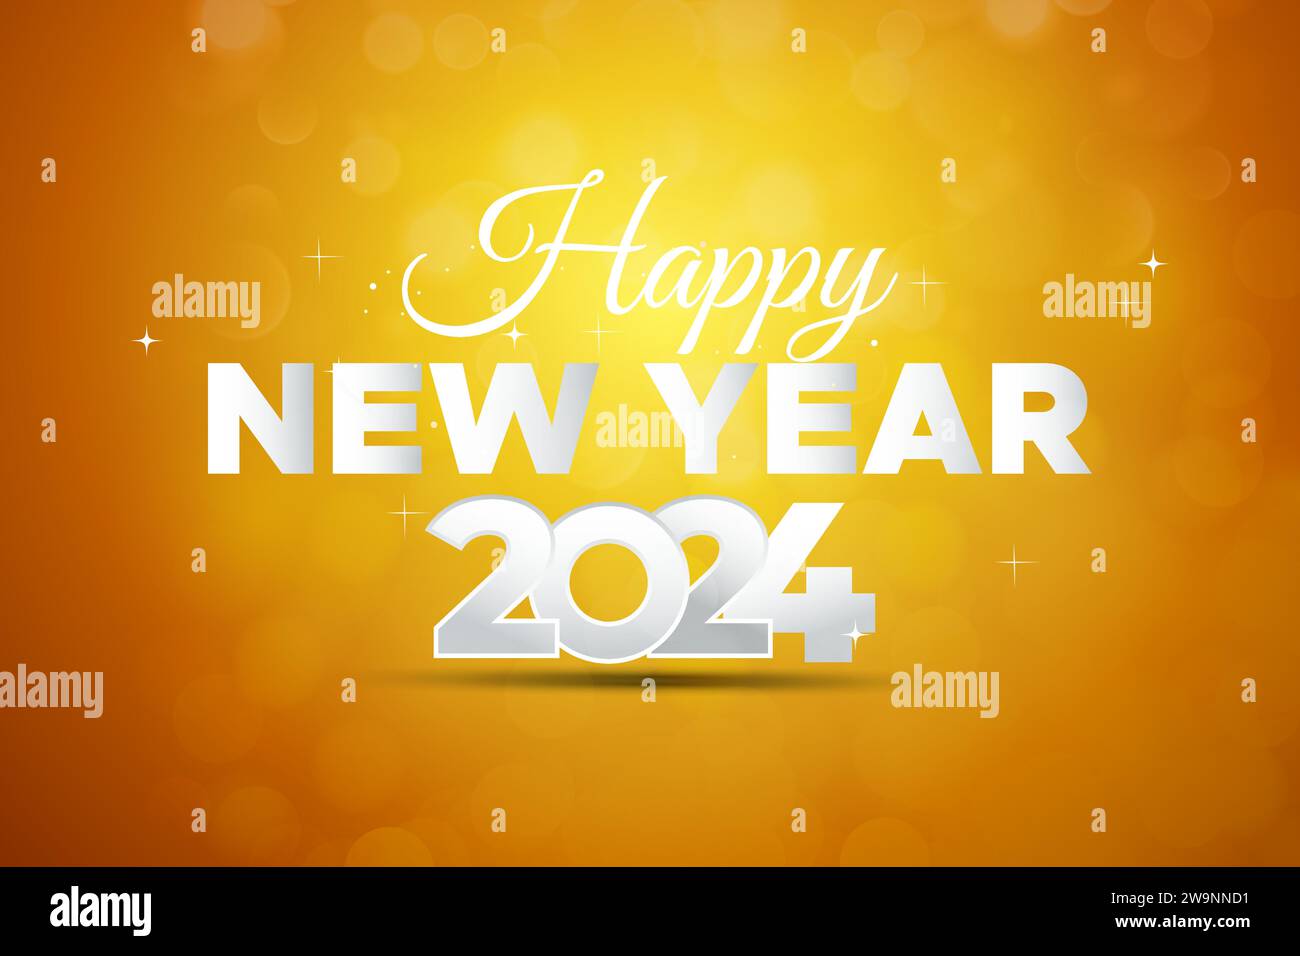 Happy New Year Gruetings Hintergrund für Silvester Motto Party Einladungen Stock Vektor